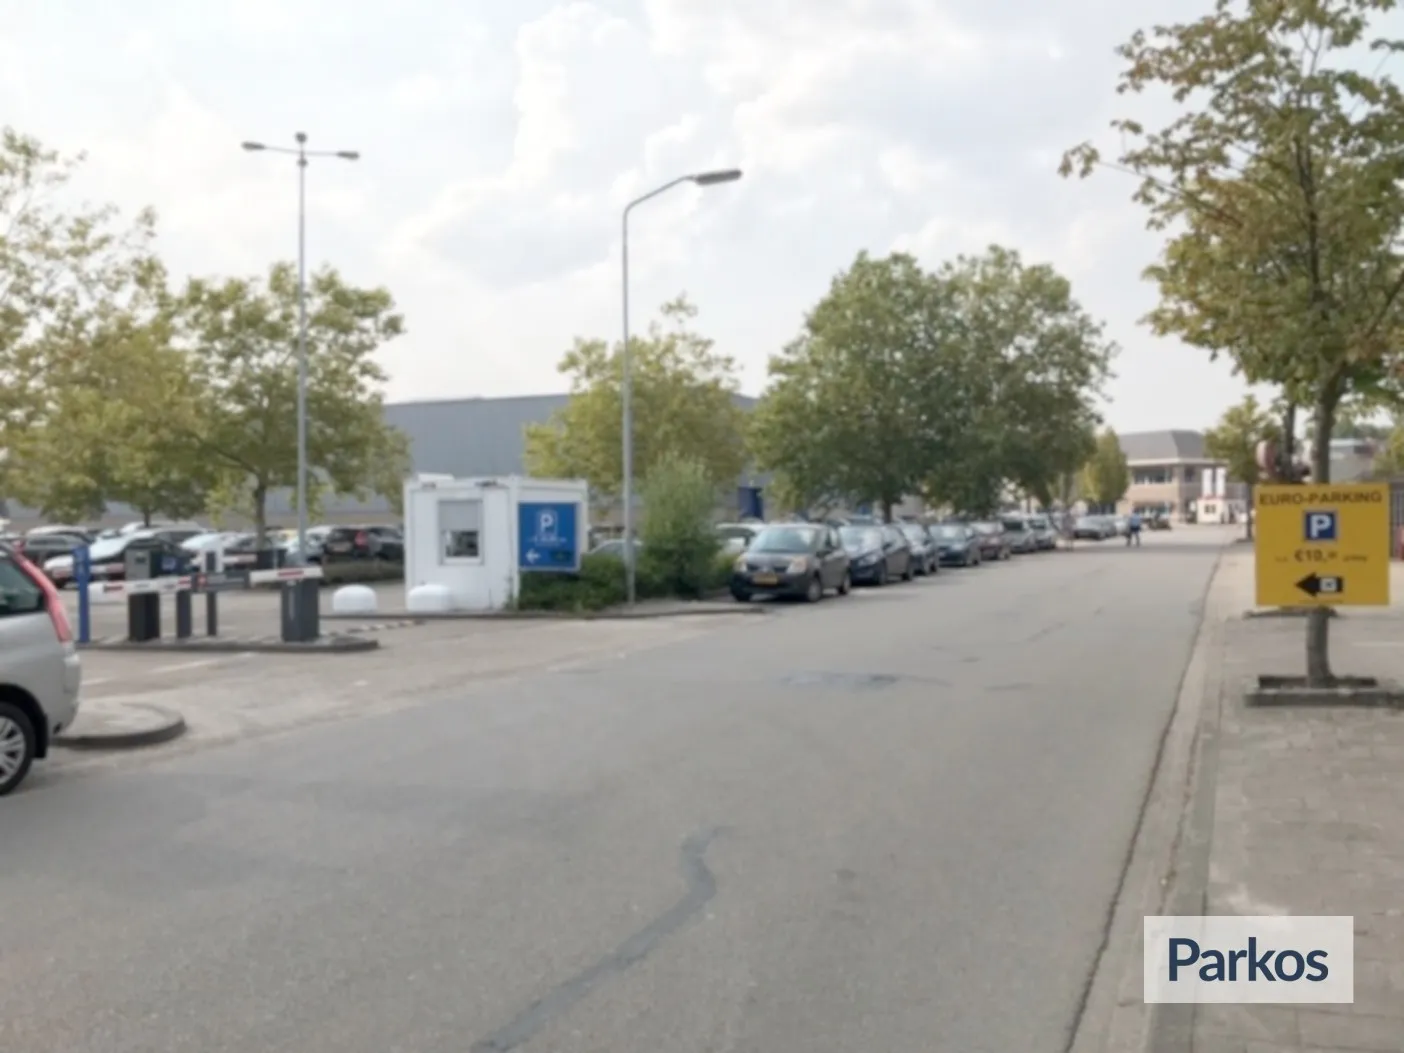 Euro-Parking - Parken Flughafen Eindhoven - picture 1